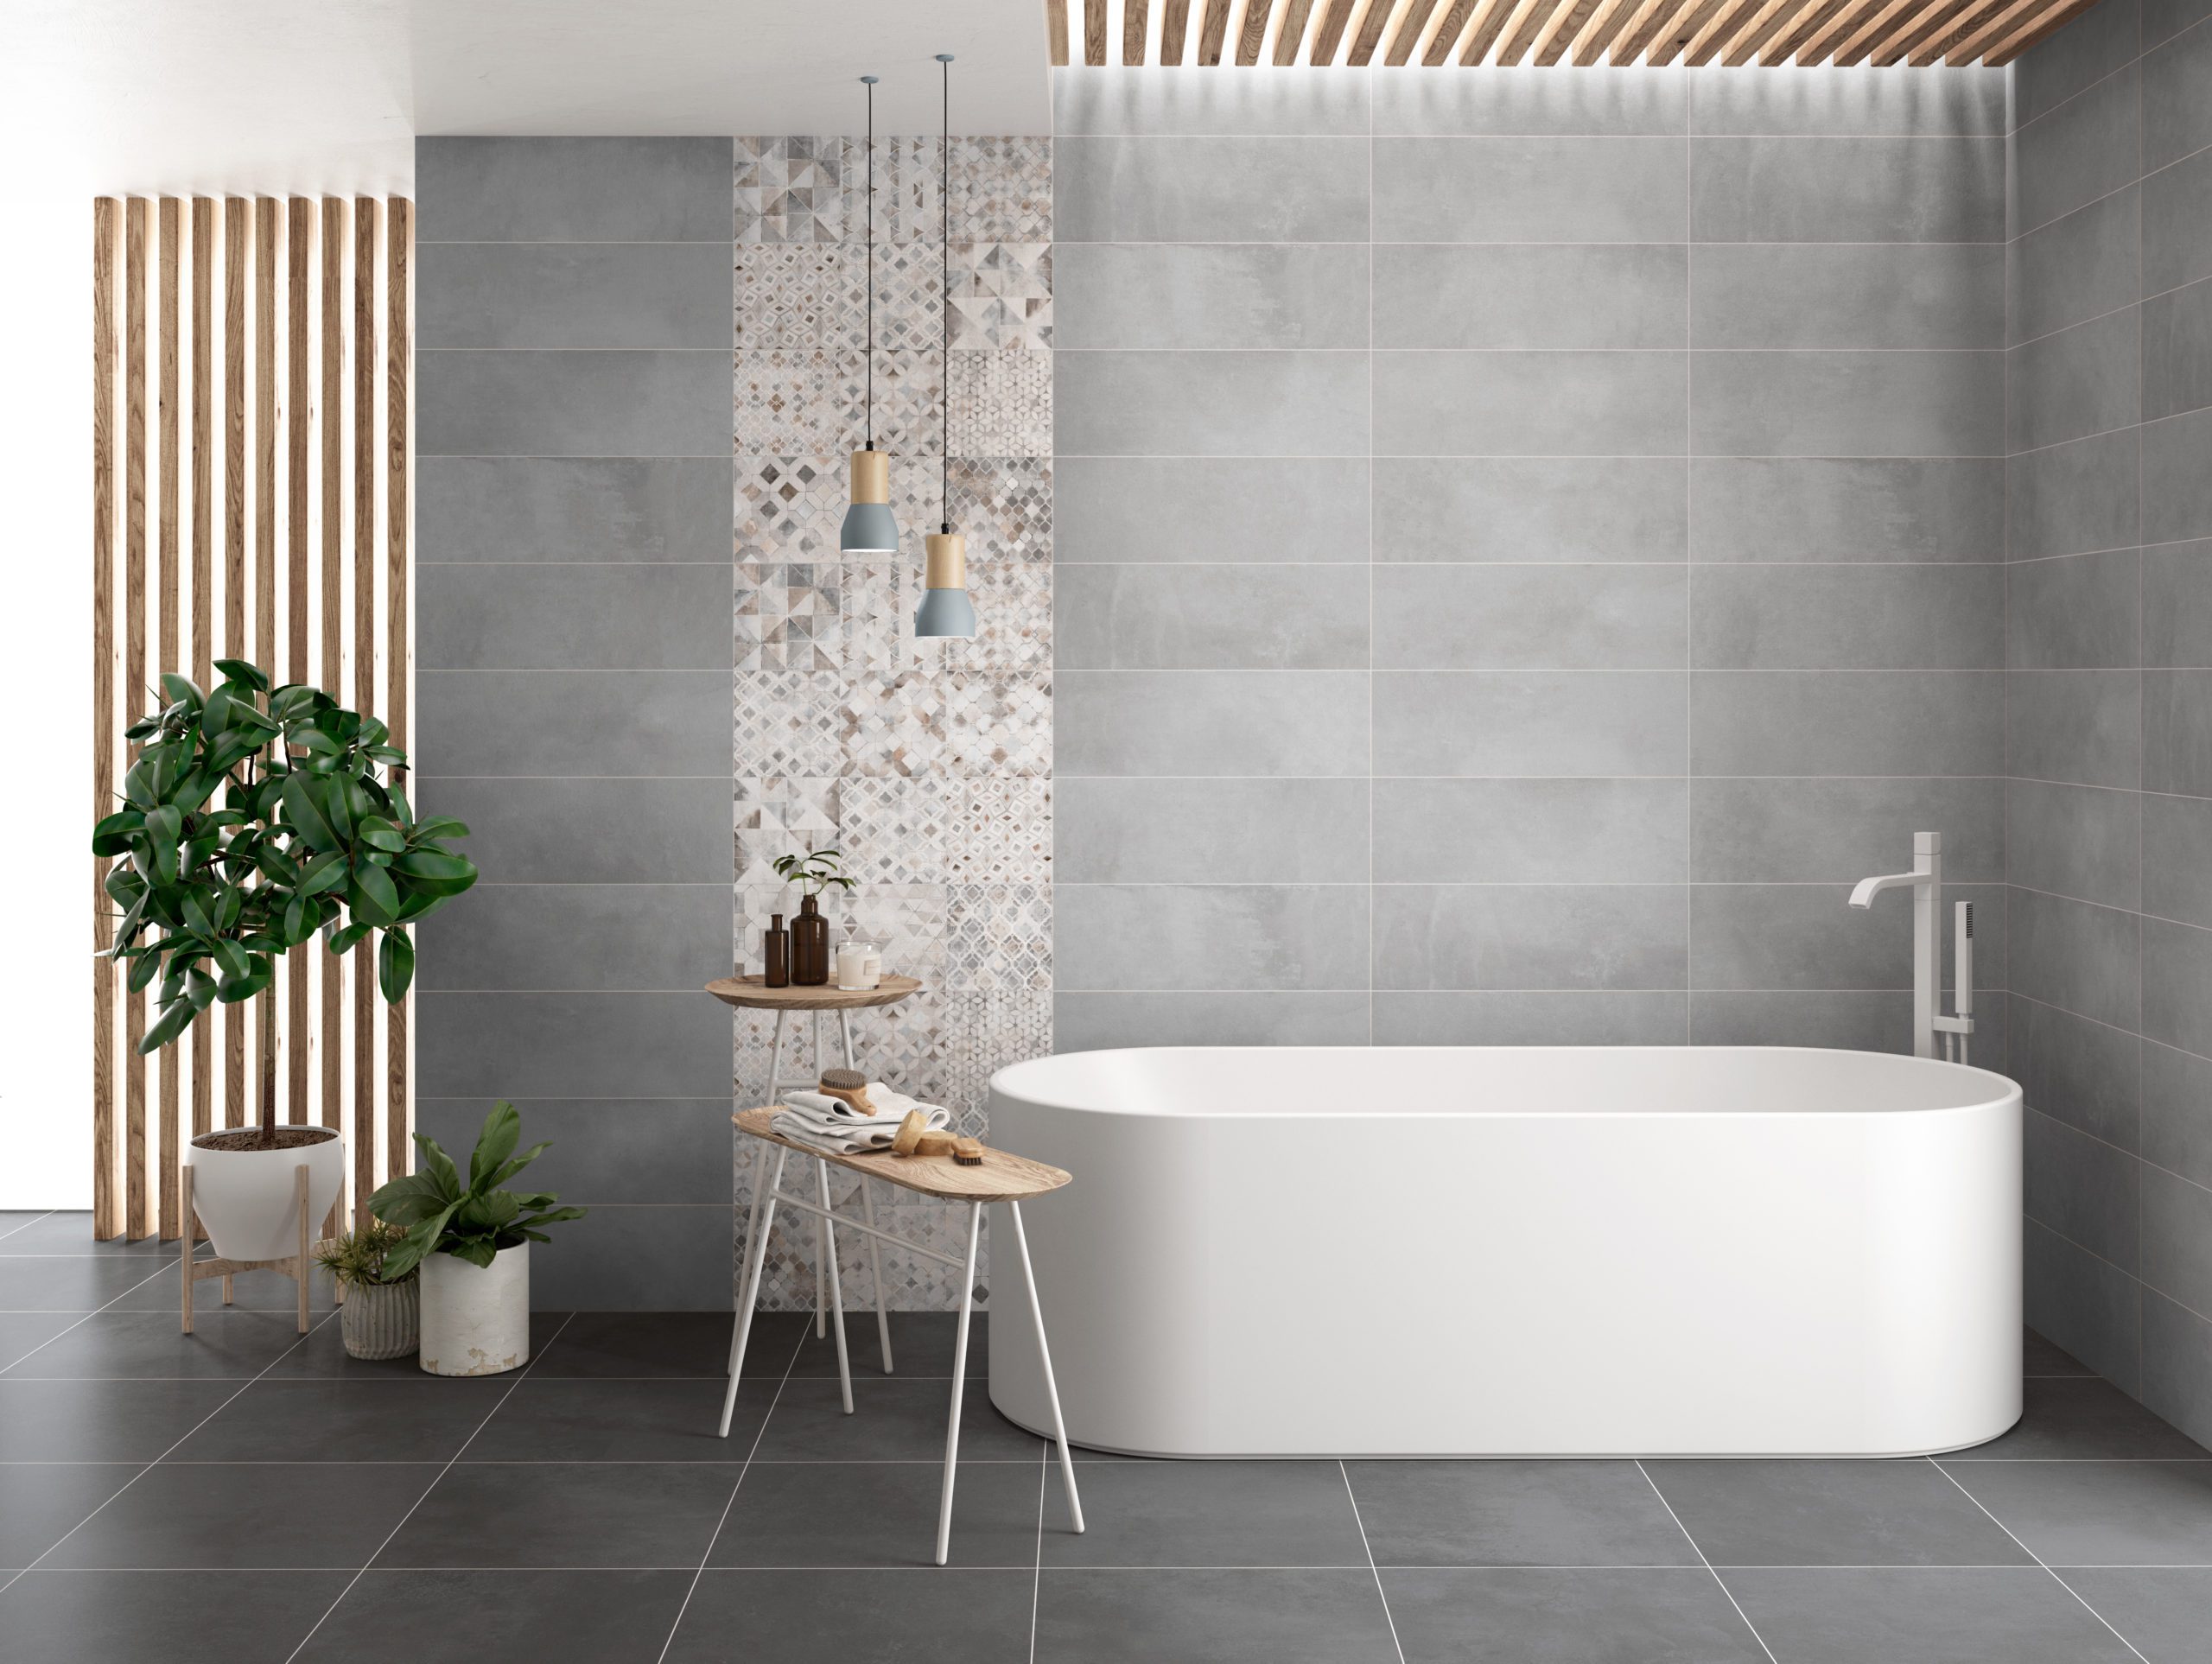 Caen Bathroom Tile Collection